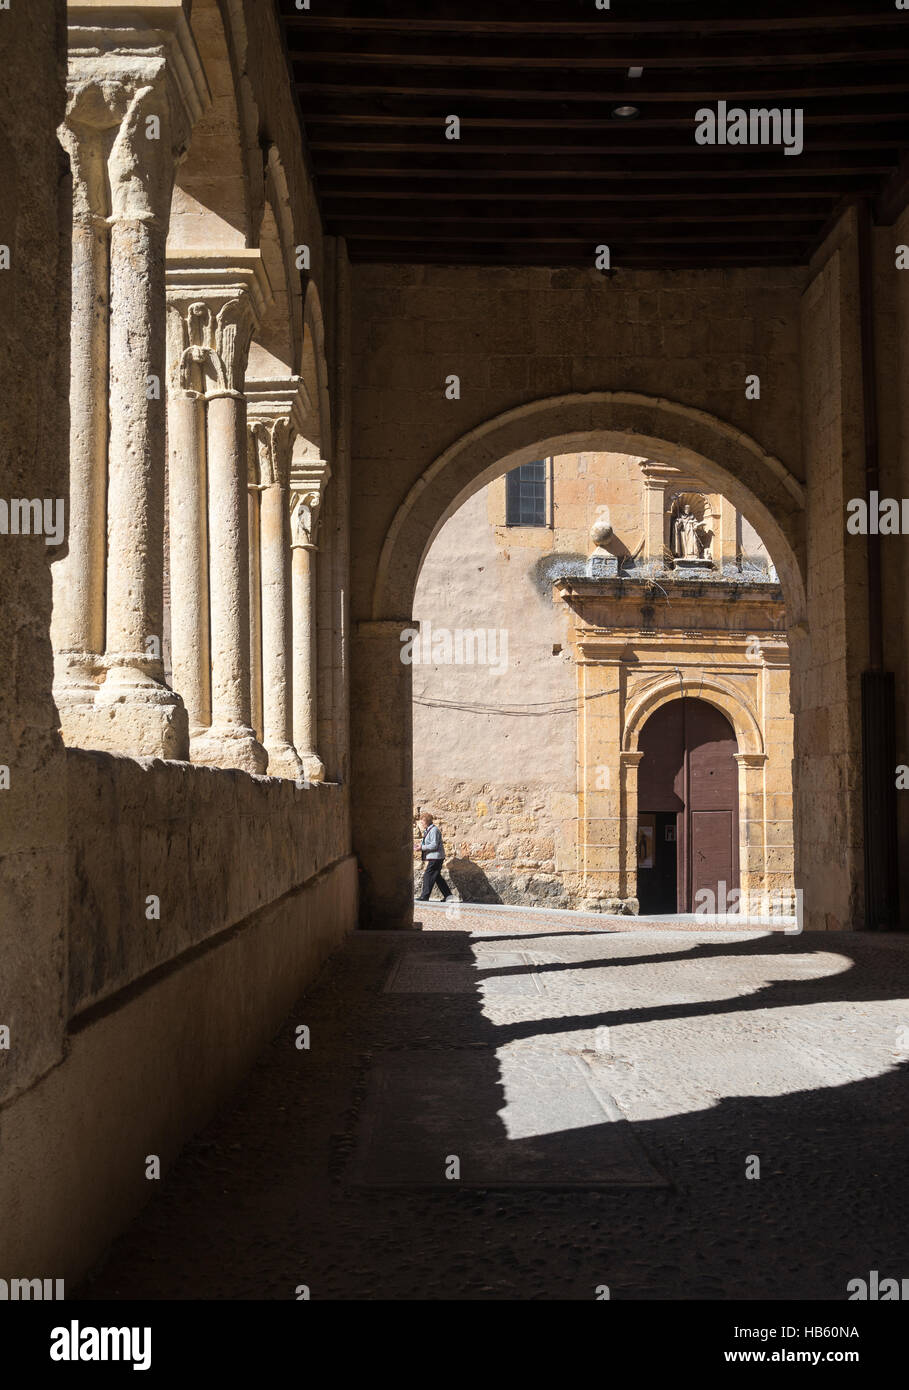 Looking toward The Santo Domingo de Guzman Monastery from the porticoed entrance of Santisima Trinidad church, Plaza De La Trinidad, Segovia, Spain Stock Photo